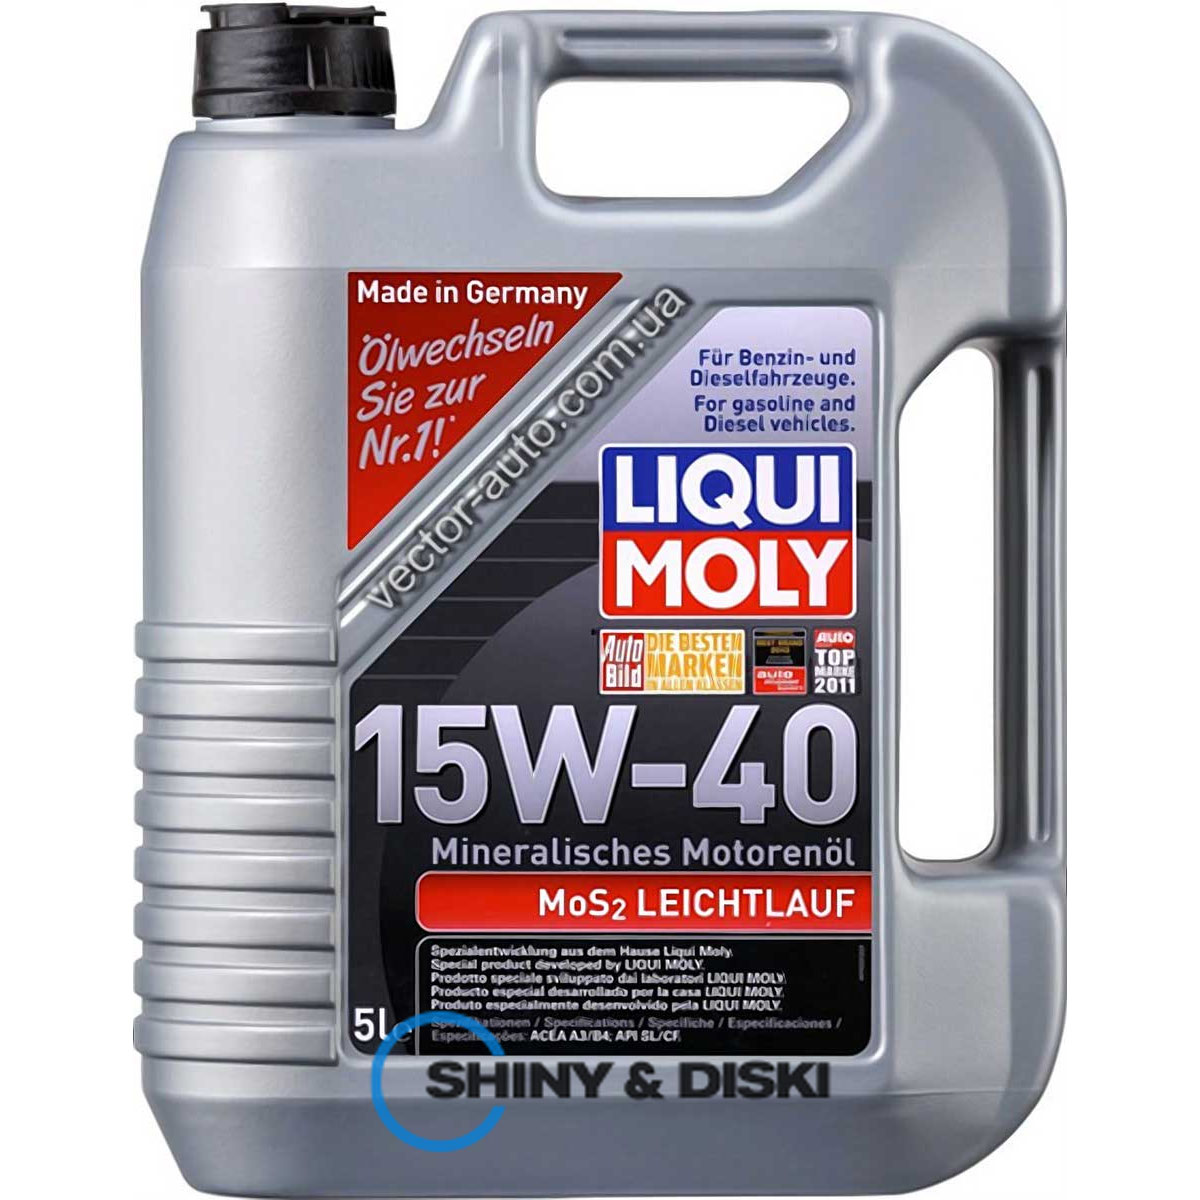 liqui moly mos2 leichtlauf 15w-40 (5л)